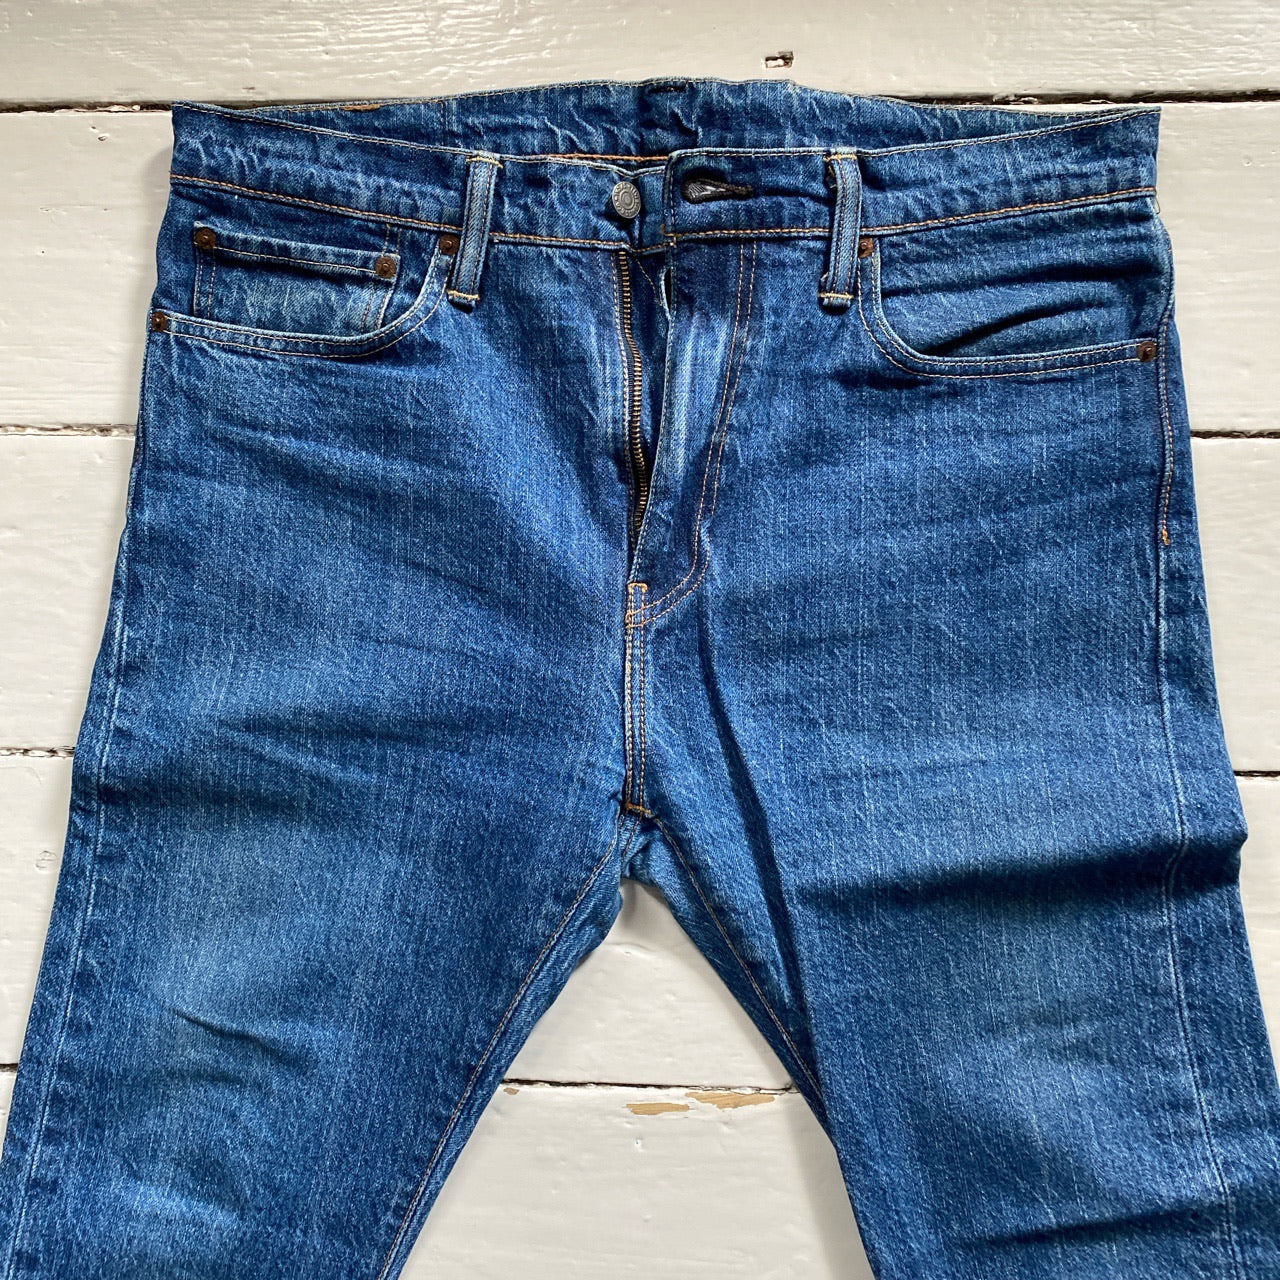 Levis 510 Slim Fit Jeans (34/30)